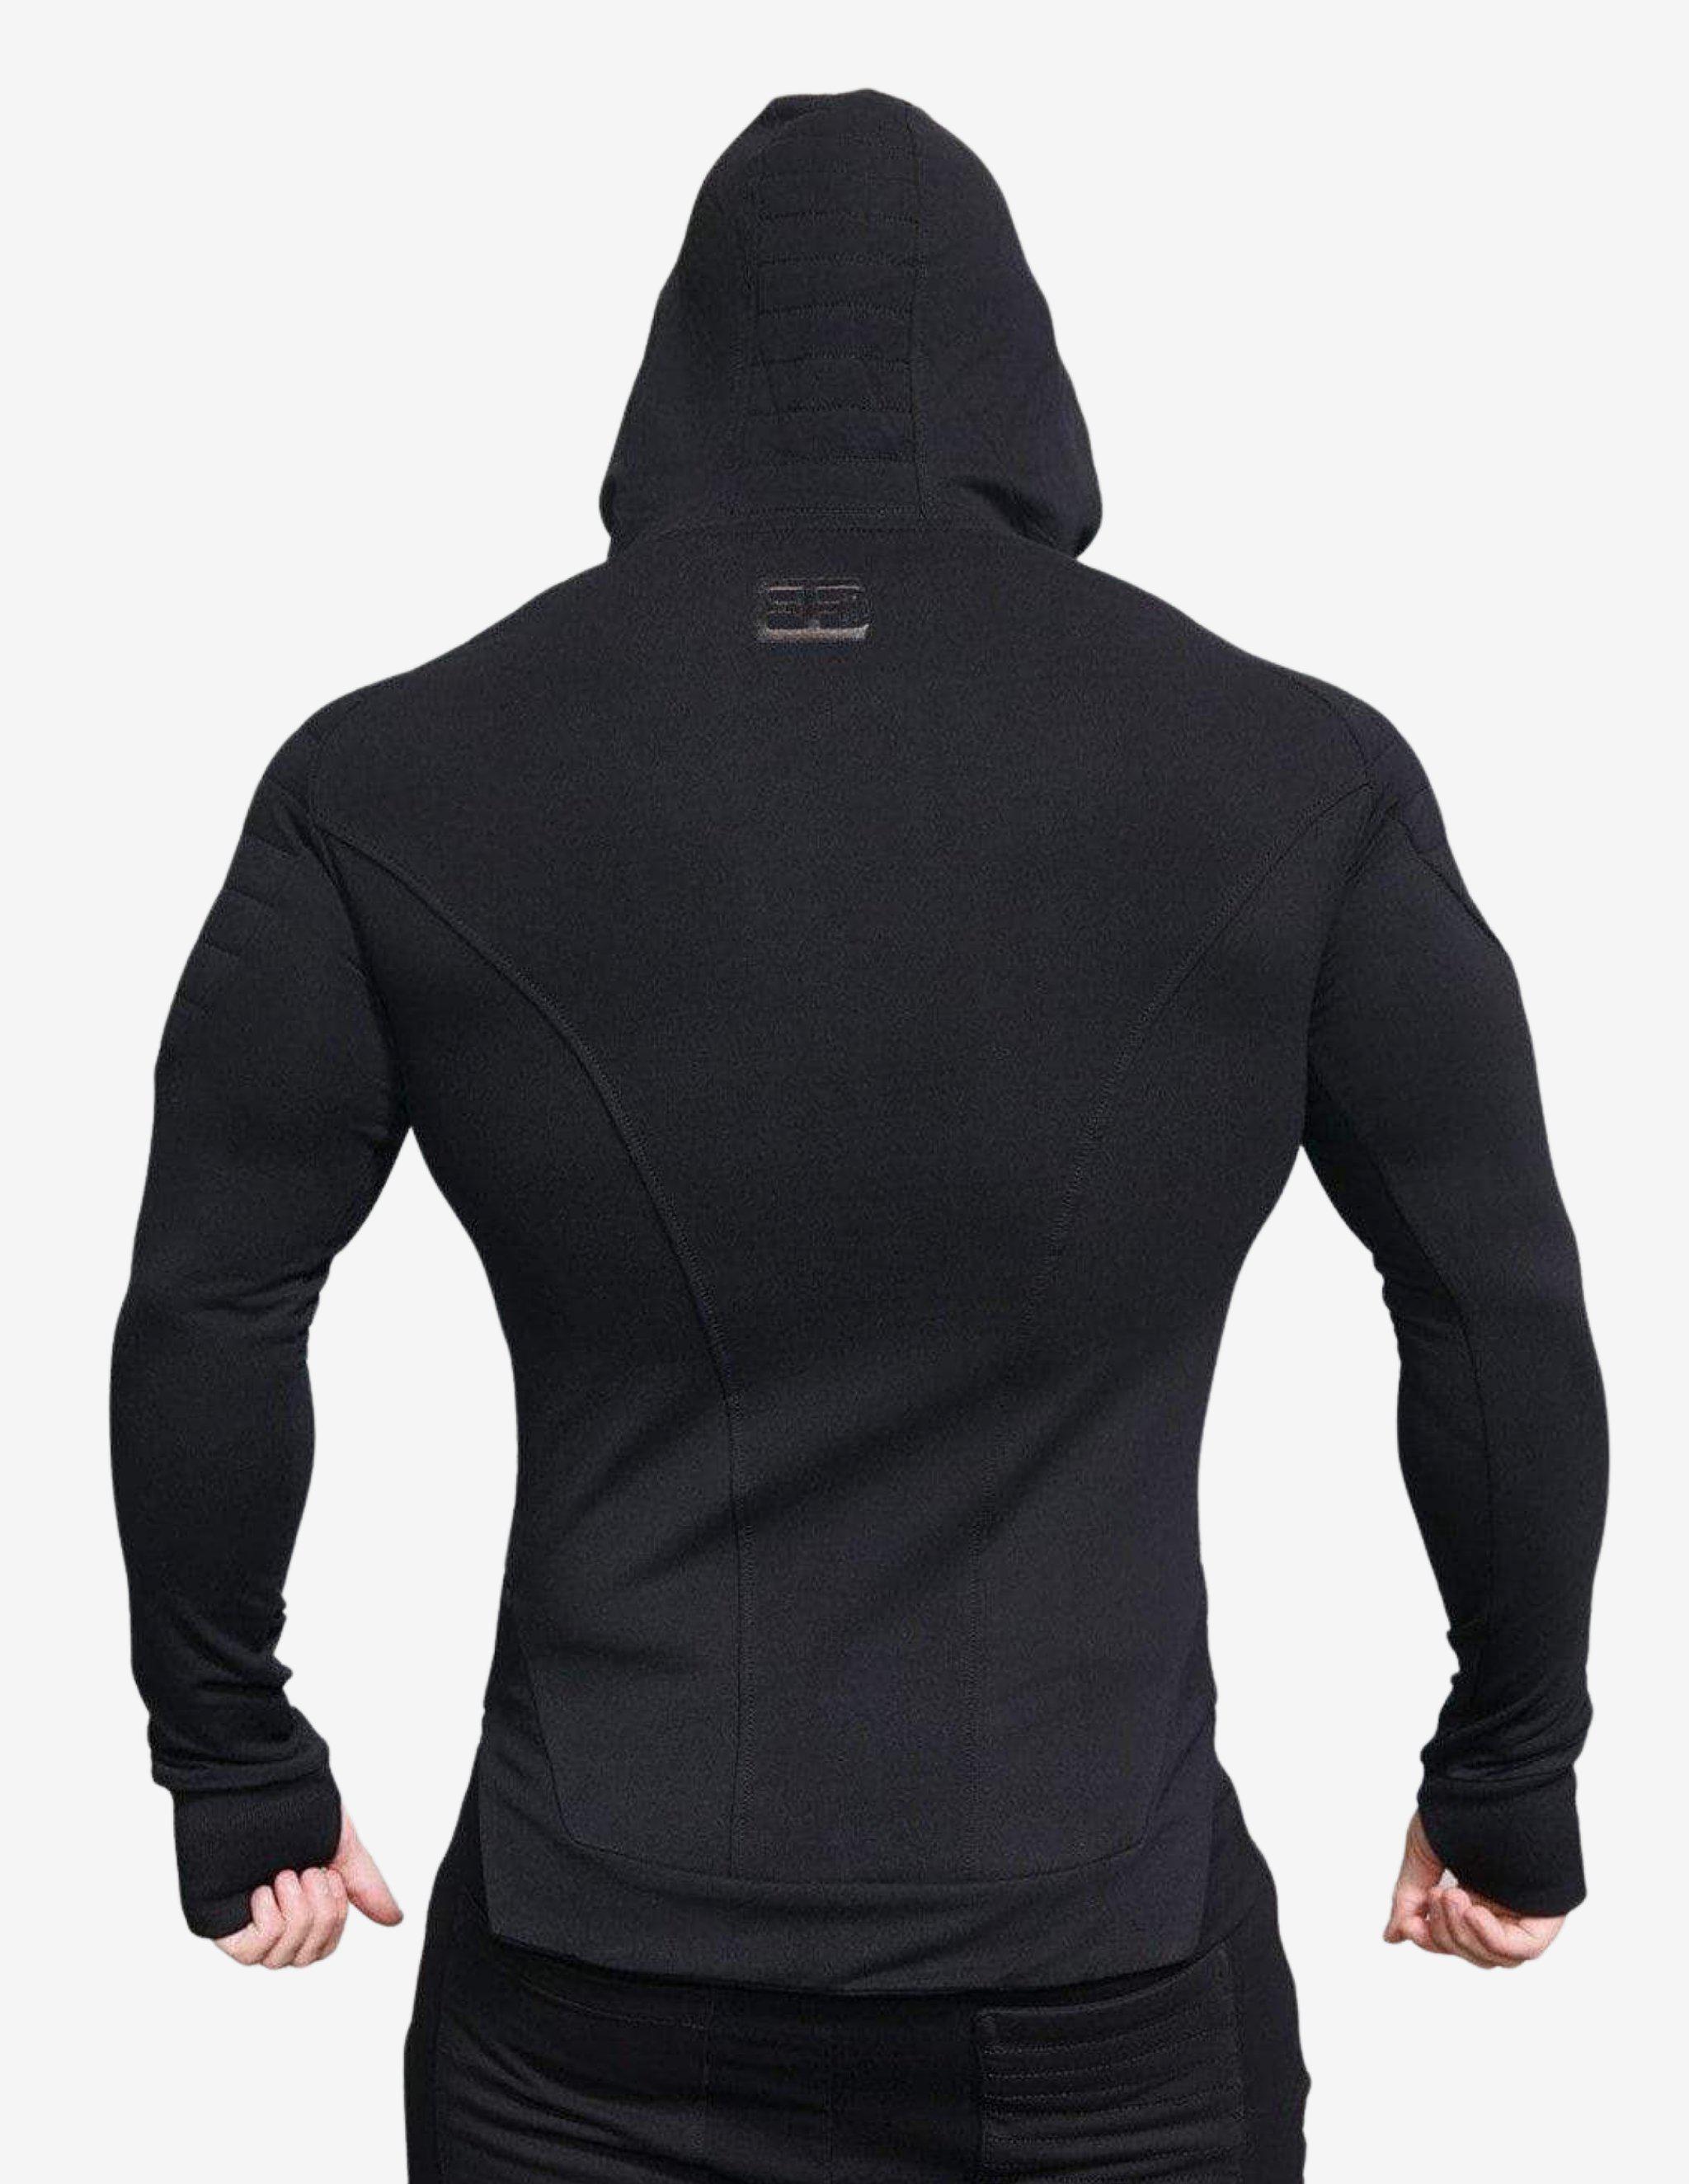 X NEO Vest- BLACK OUT-Hoodie Man-Body Engineers-Guru Muscle